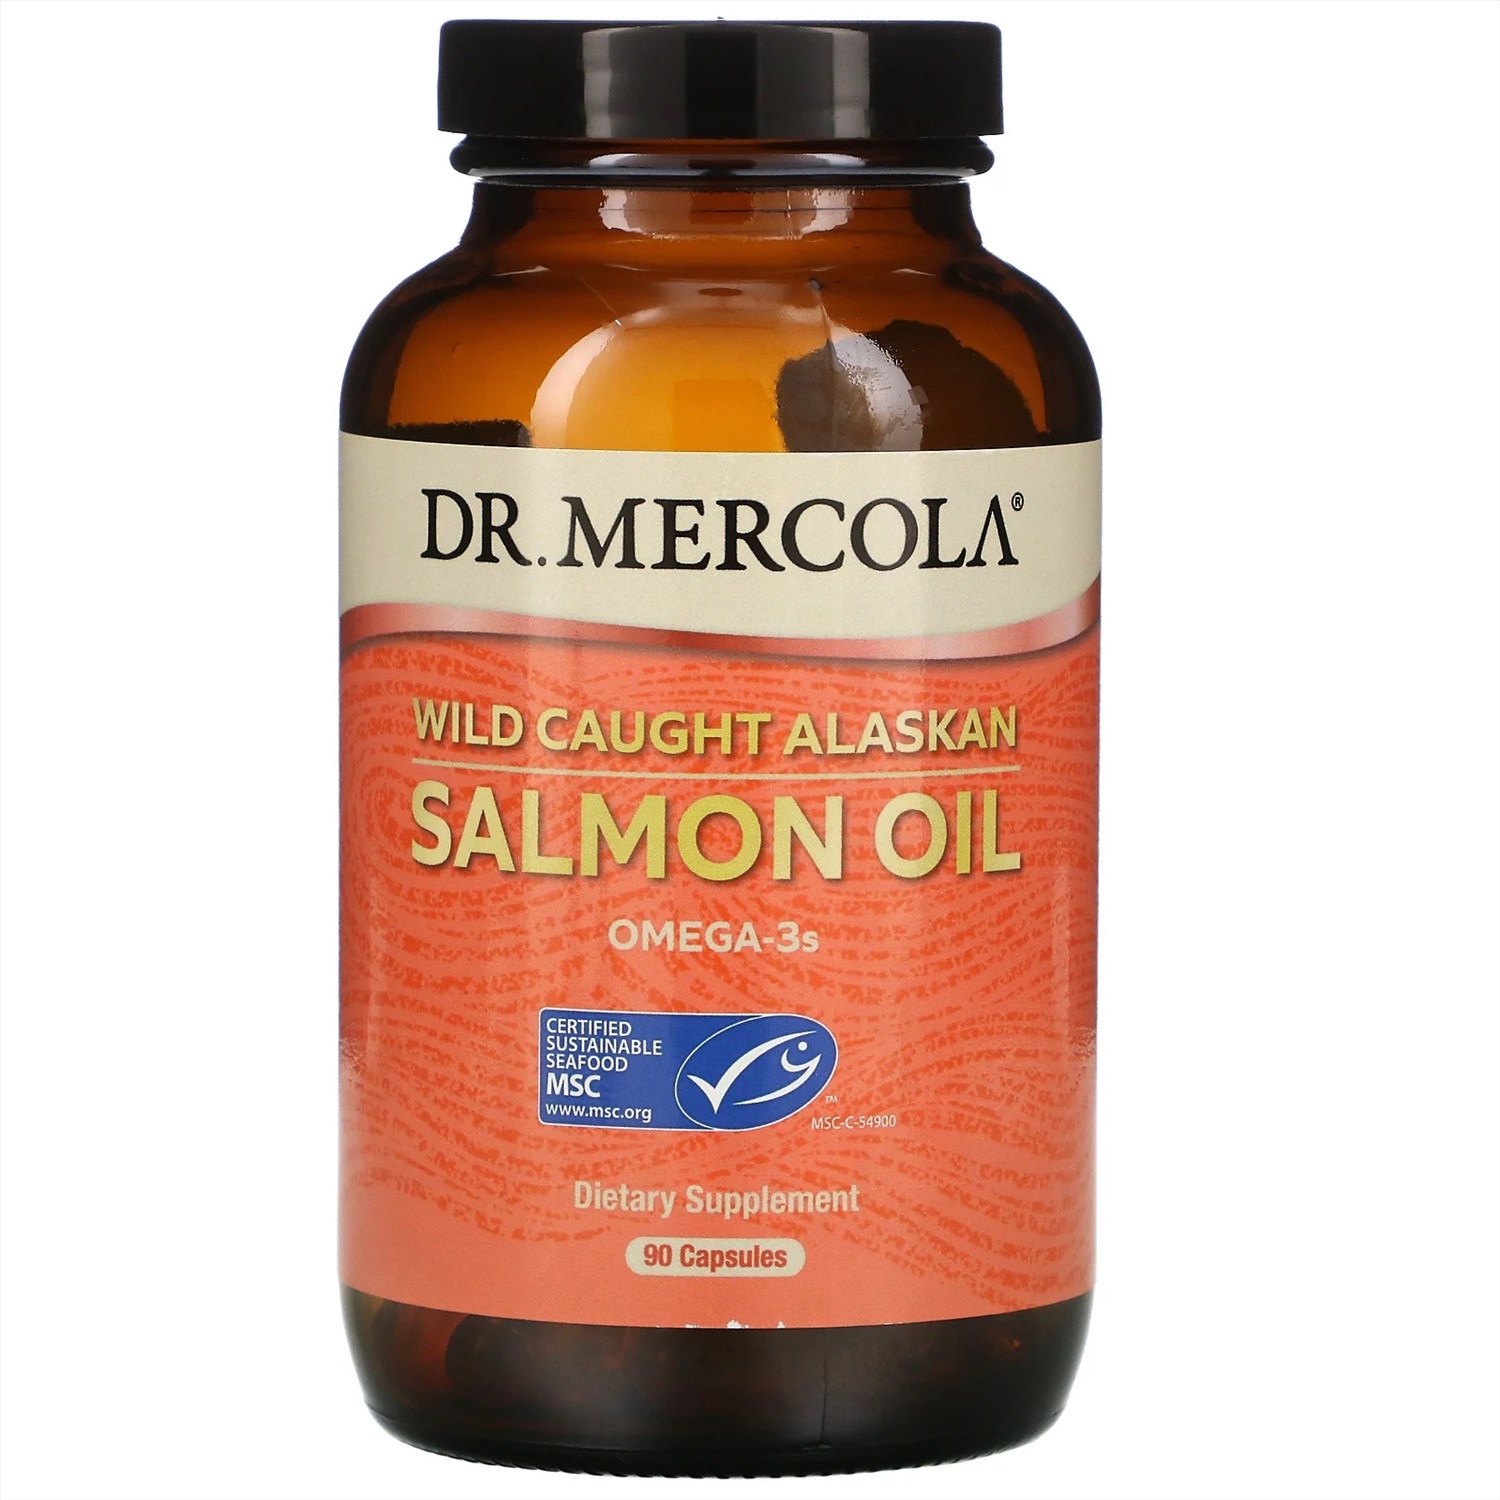 Рыбий жир из дикого лосося. Salmon Oil Omega 3 Dr Mercola. Dr. Mercola, жир дикого аляскинского лосося, 90 капсул. Омега 3 из аляскинского лосося. Масло дикого лосося (Омега-3, d3, b12).